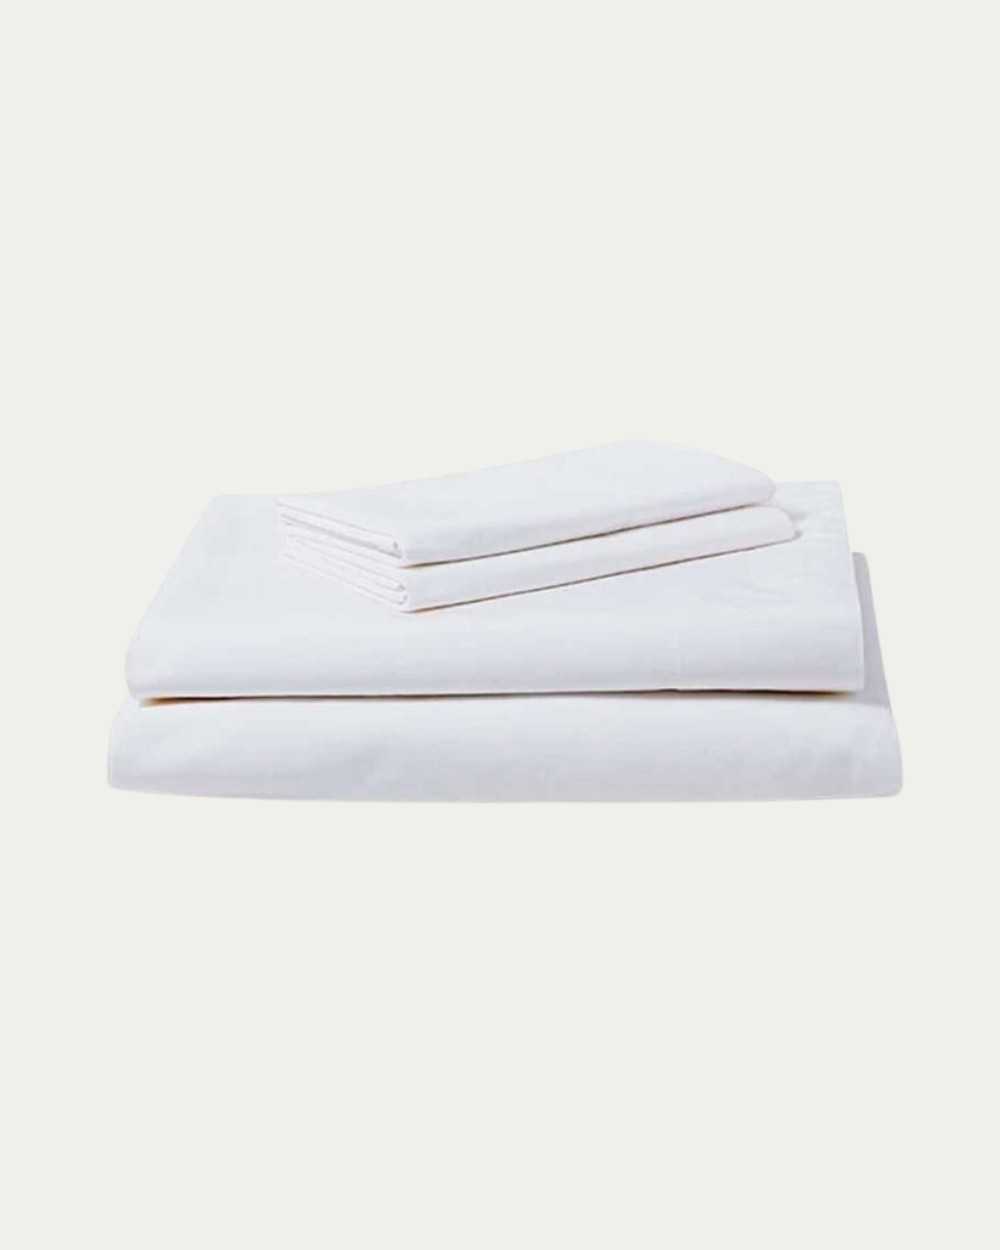 Sábanas blancas tipo hoteleras fabricadas con tela percal 300 hilos 100% algodón